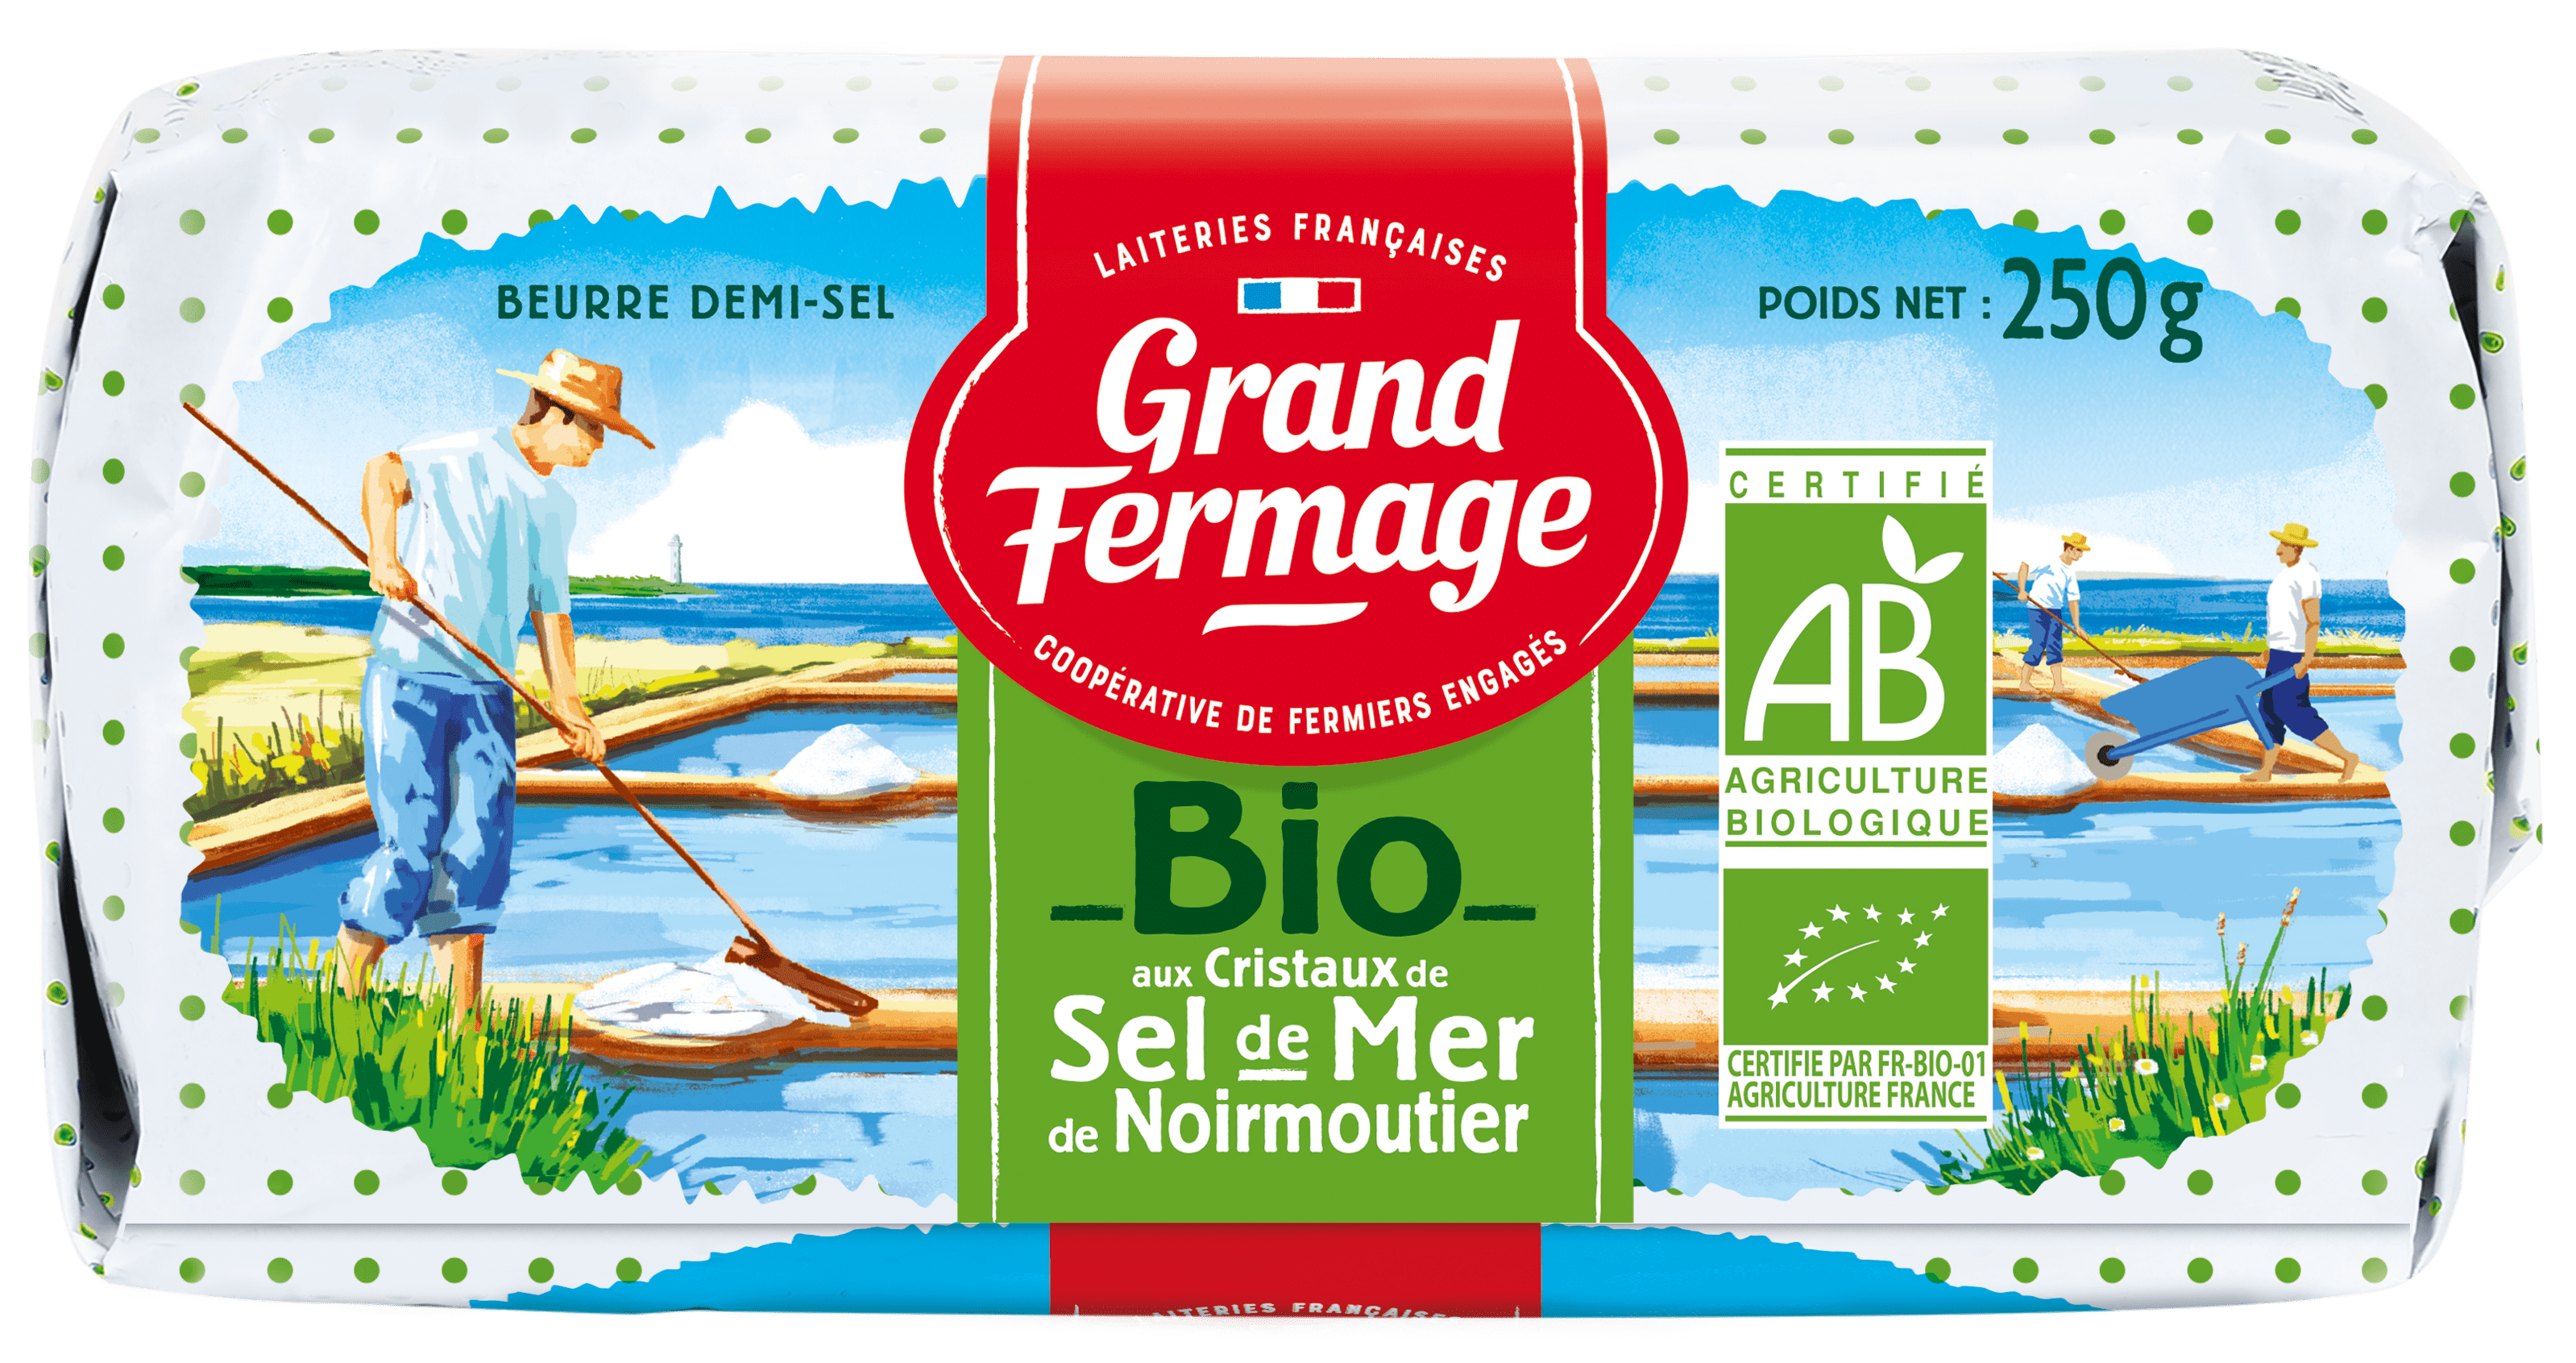 Beurre BIO aux cristaux de sel de Noirmoutier - Grand Fermage